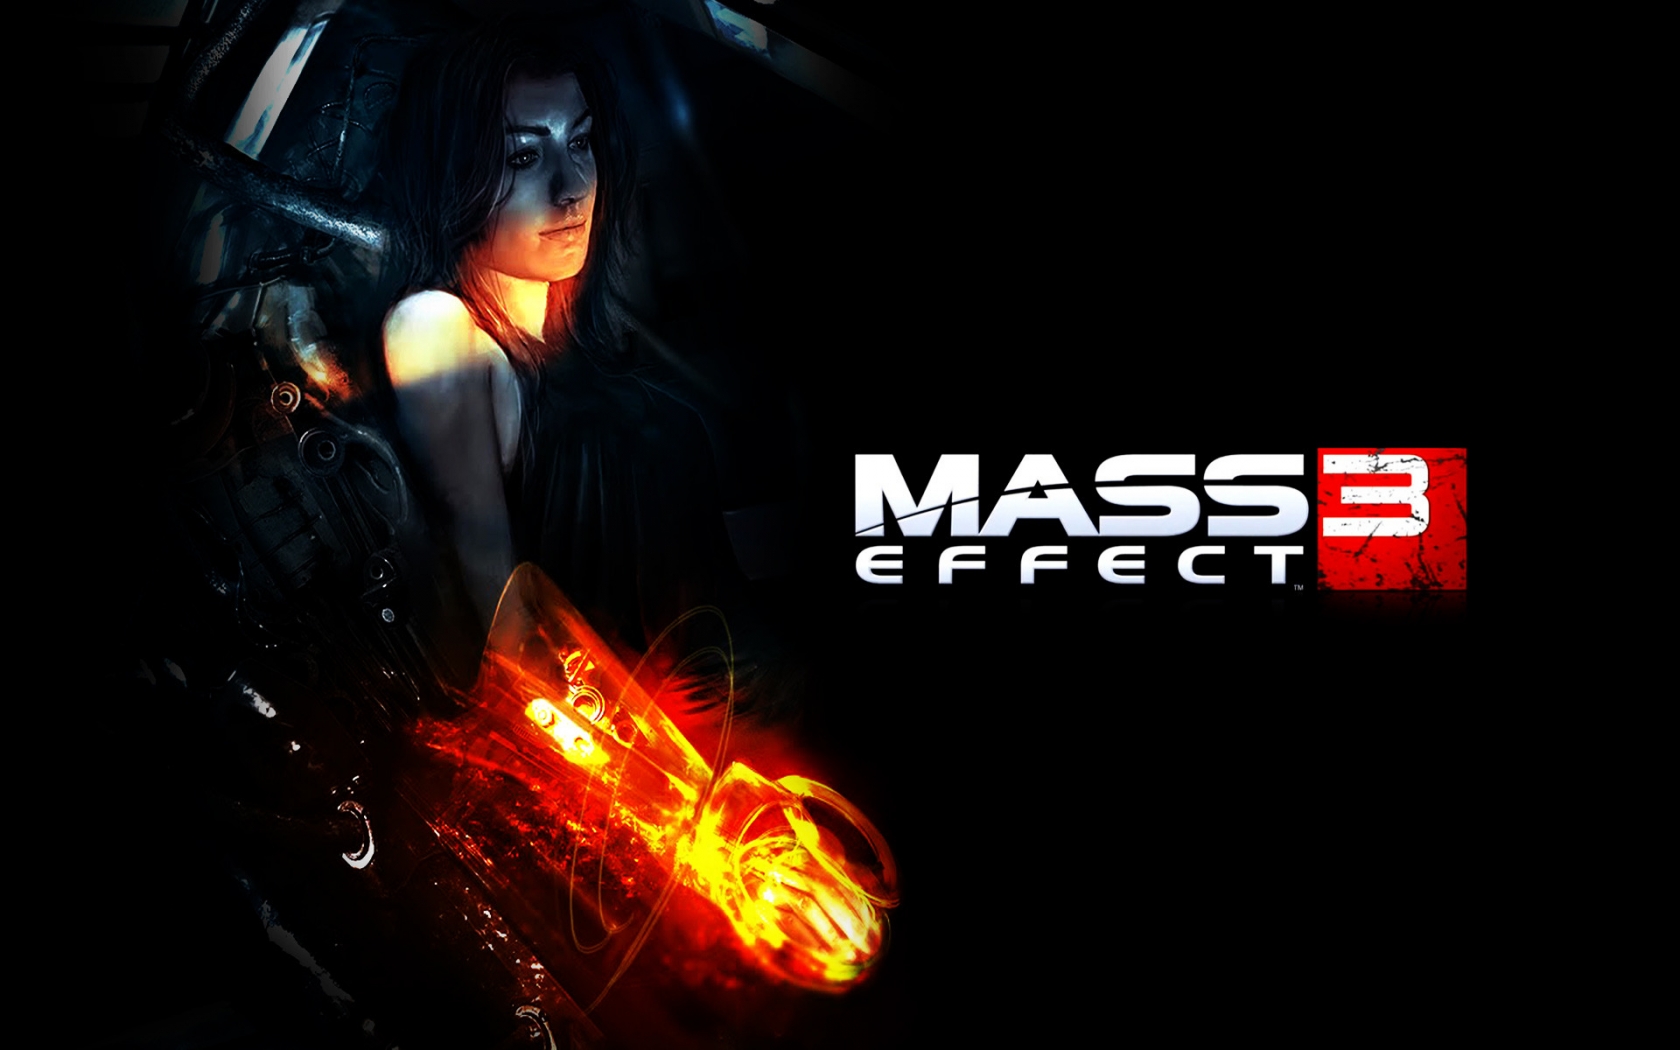 Miranda Mass Effect 3 for 1680 x 1050 widescreen resolution